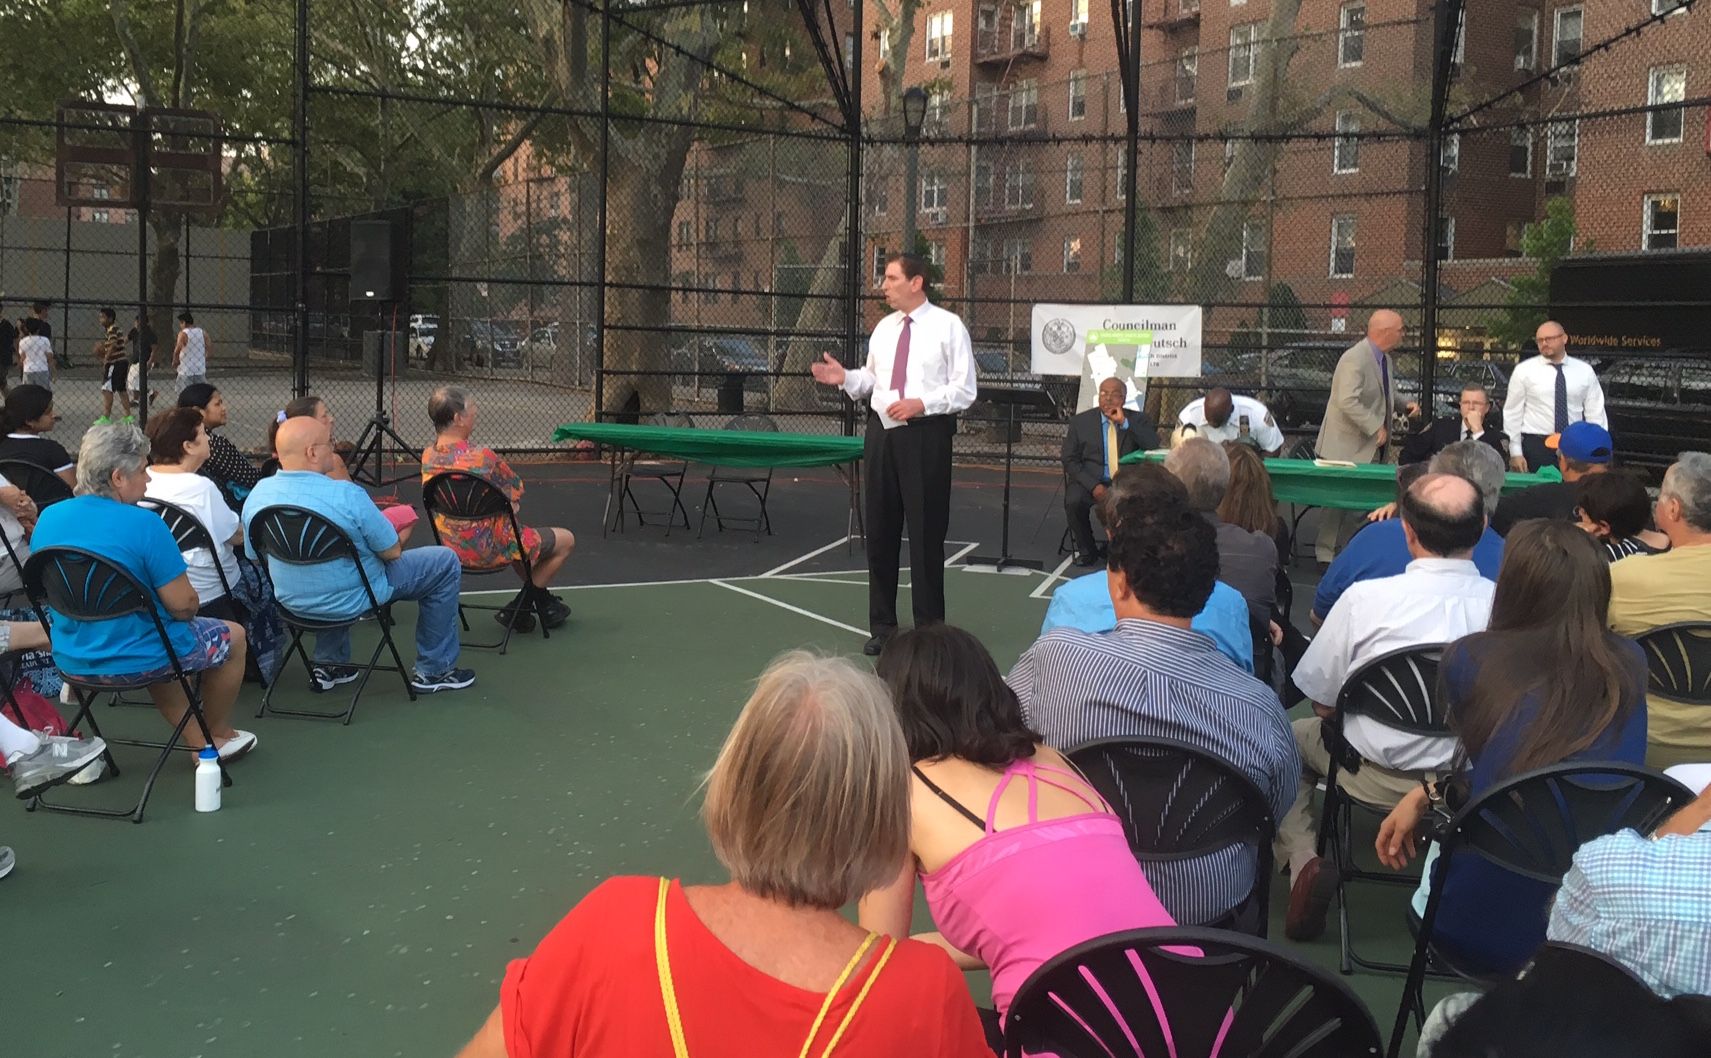 Councilman Deutsch Holds Forum On Park Safety At Homecrest Playground